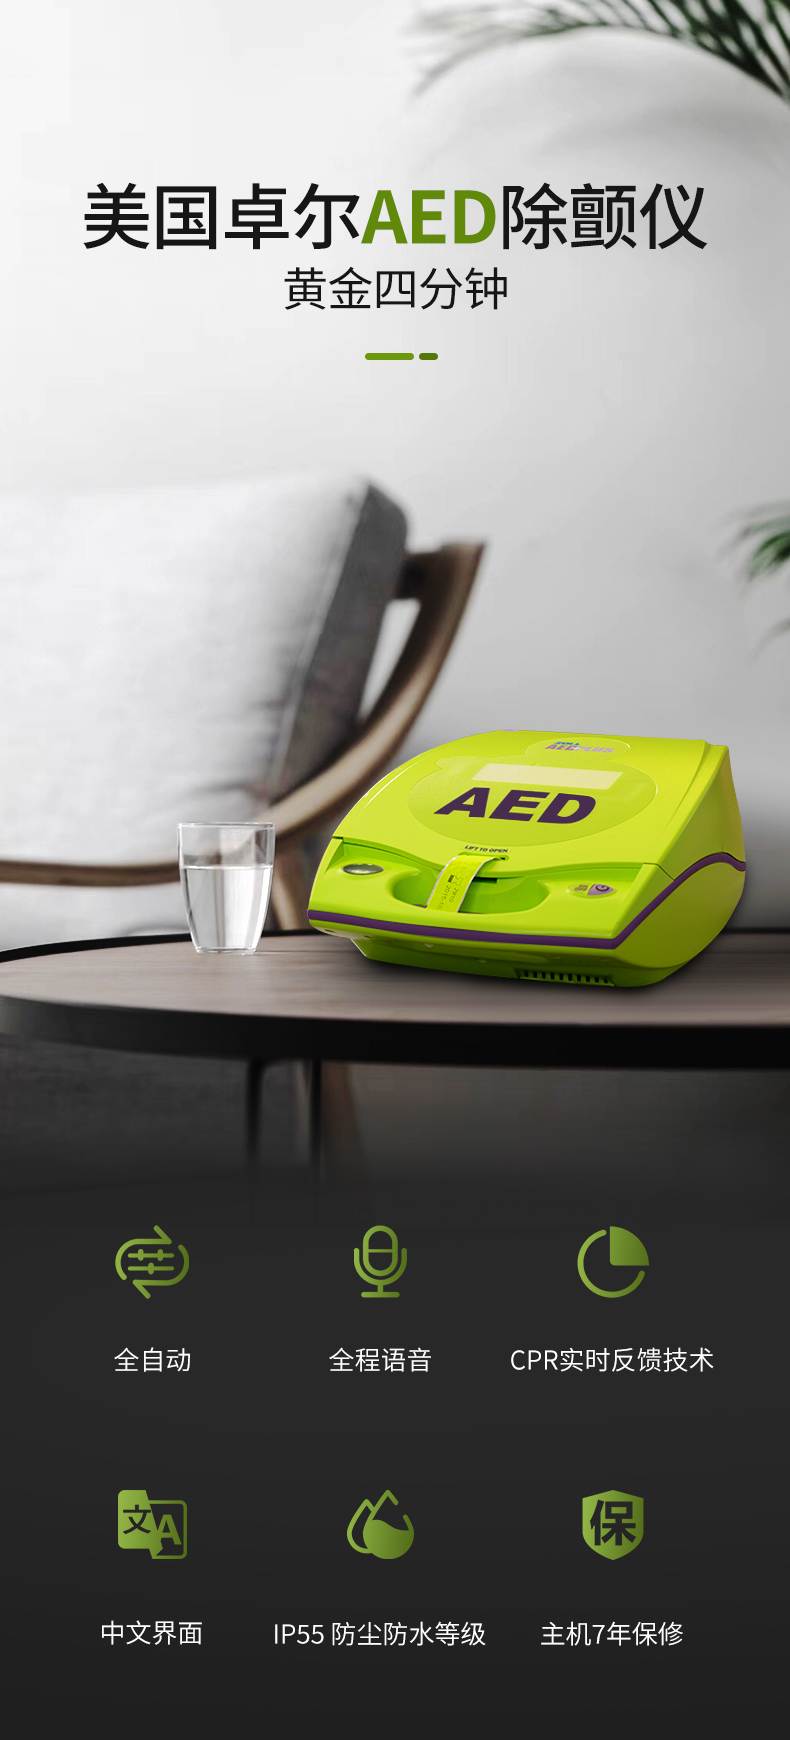 卓尔AED除颤仪AED.jpg